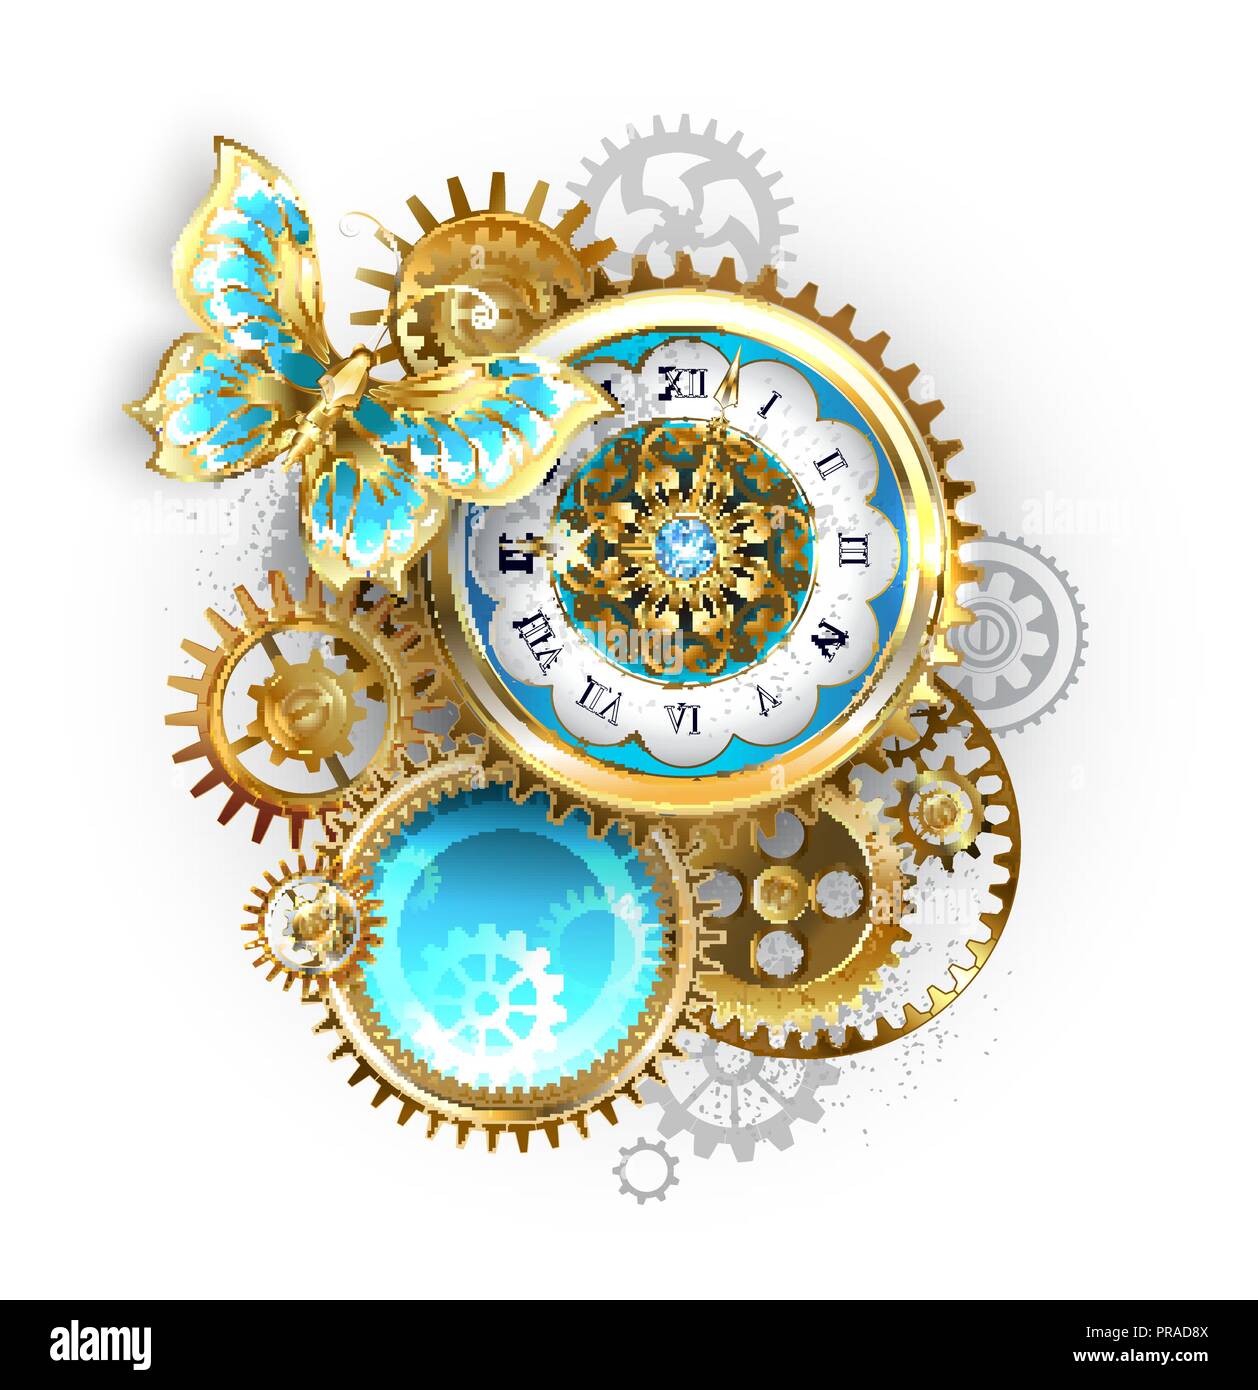 Horloge ancienne, décoré de motif, avec papillon d'or et d'or et d'engrenages en laiton sur fond blanc. Steampunk. Illustration de Vecteur